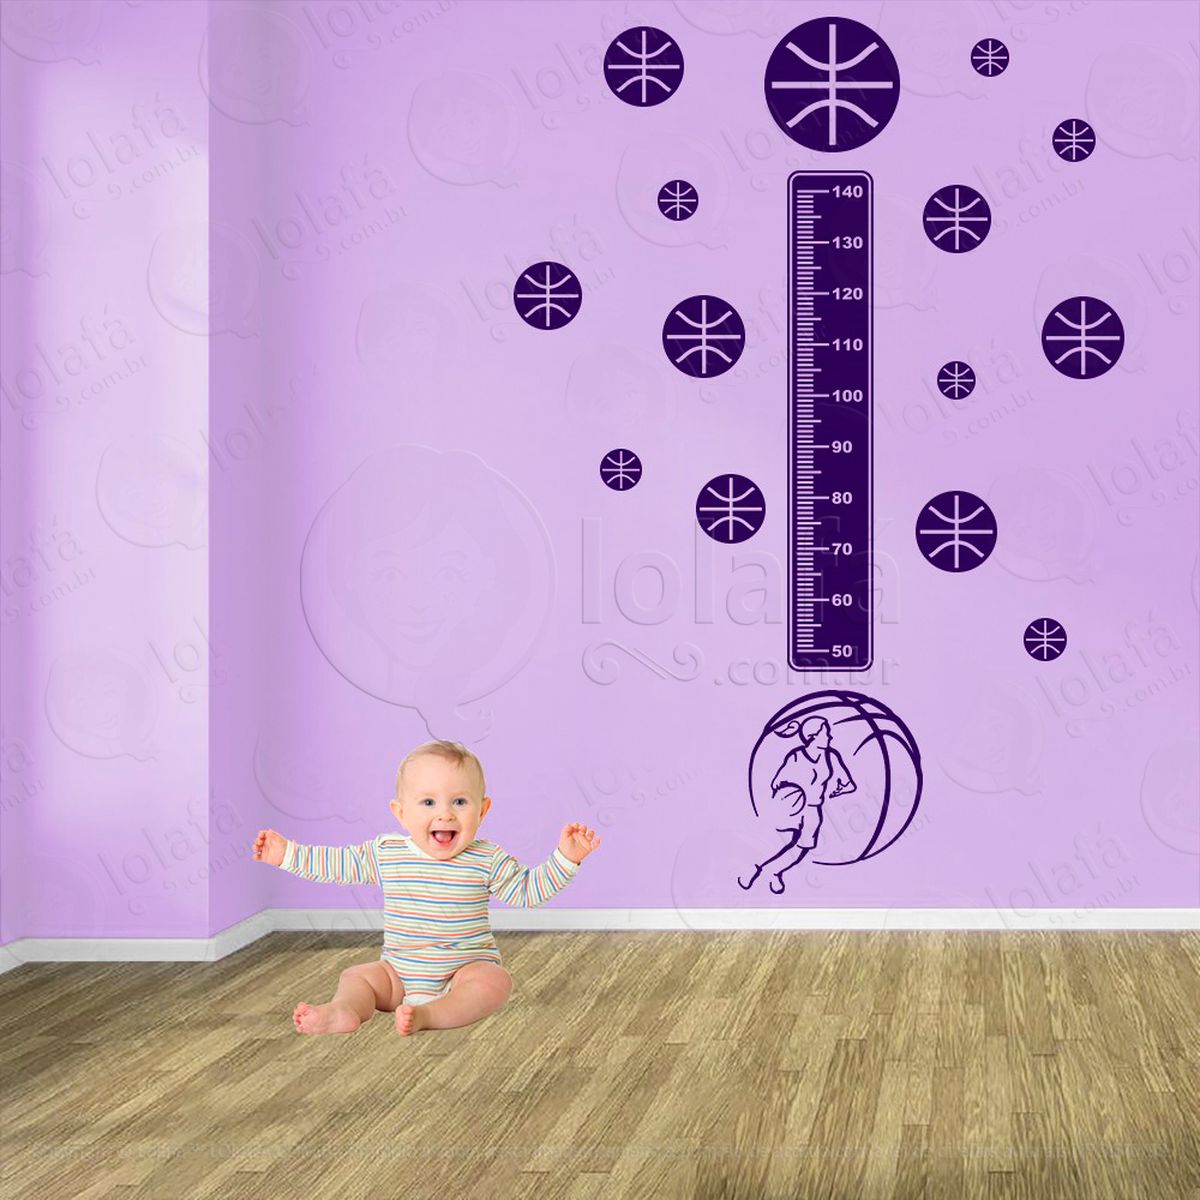 basquetebol e bolas de basquete adesivo régua de crescimento infantil, medidor de altura para quarto, porta e parede - mod:261